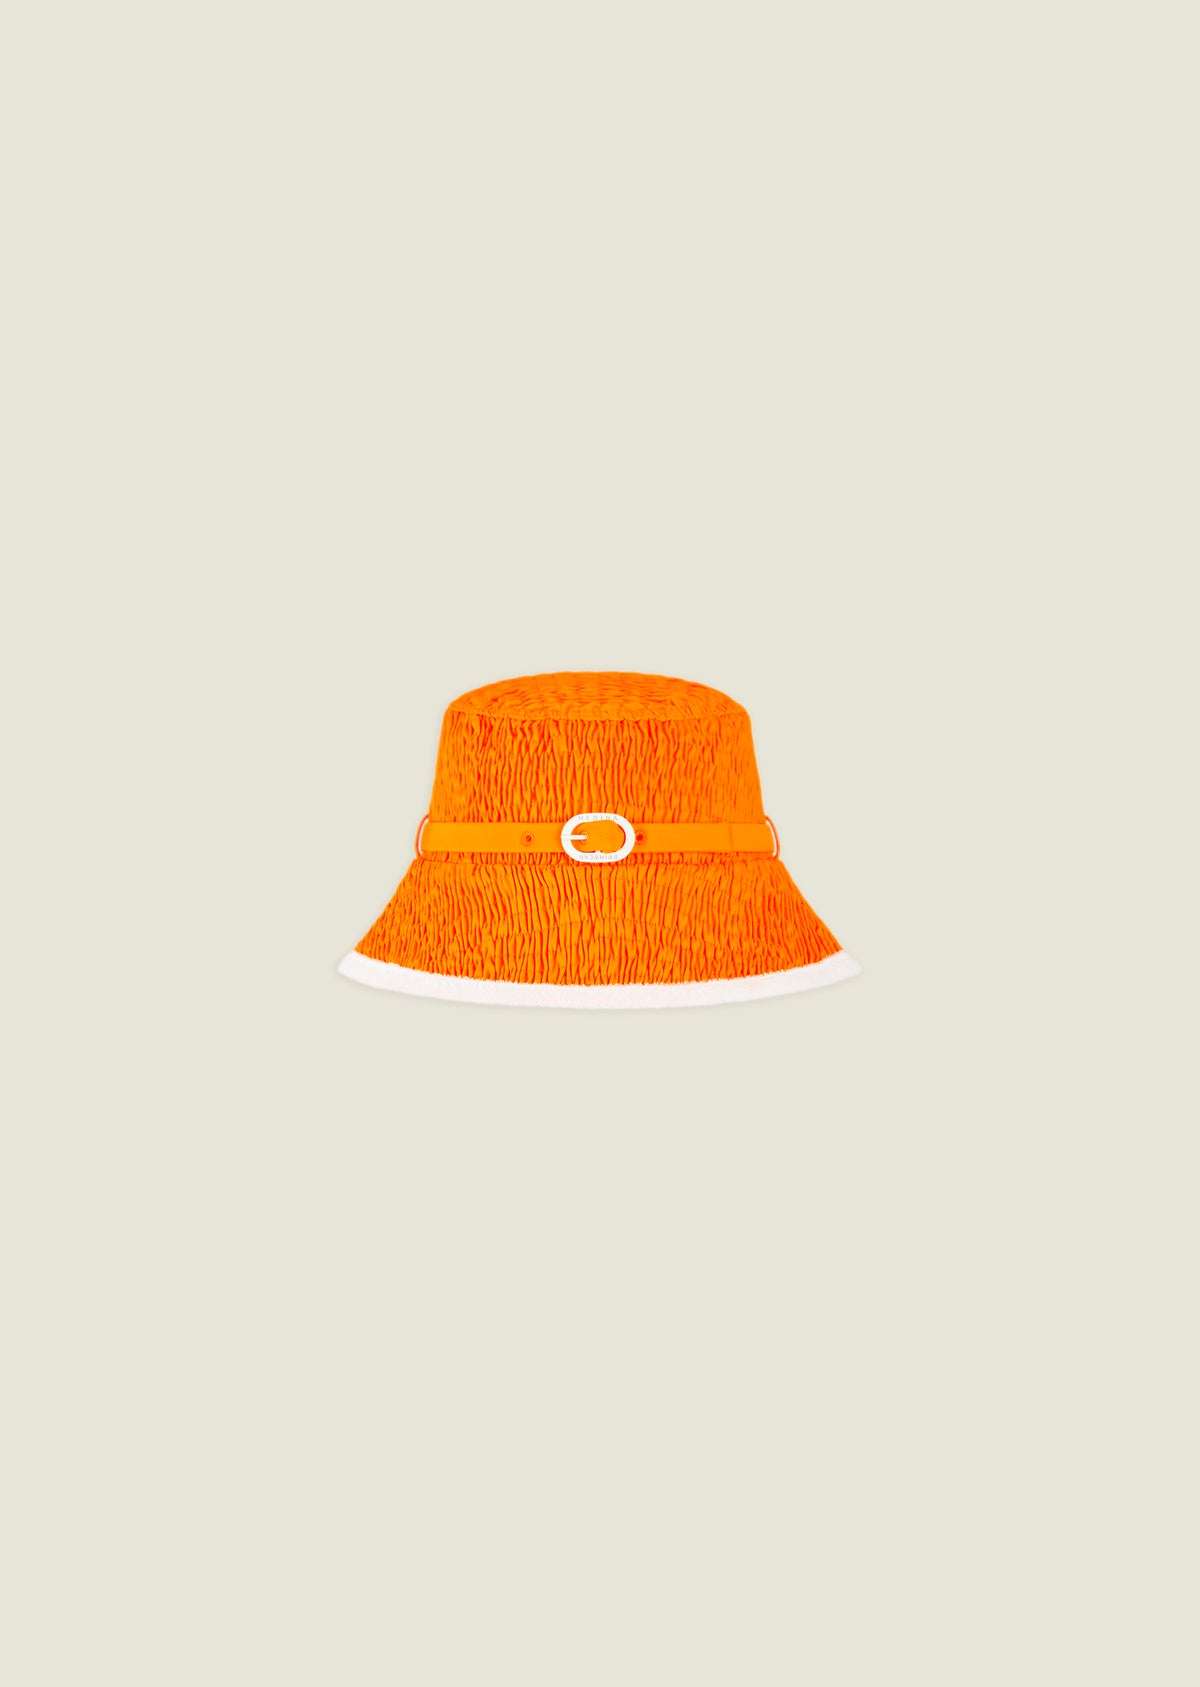 Coral Hat - Honduras - Orange